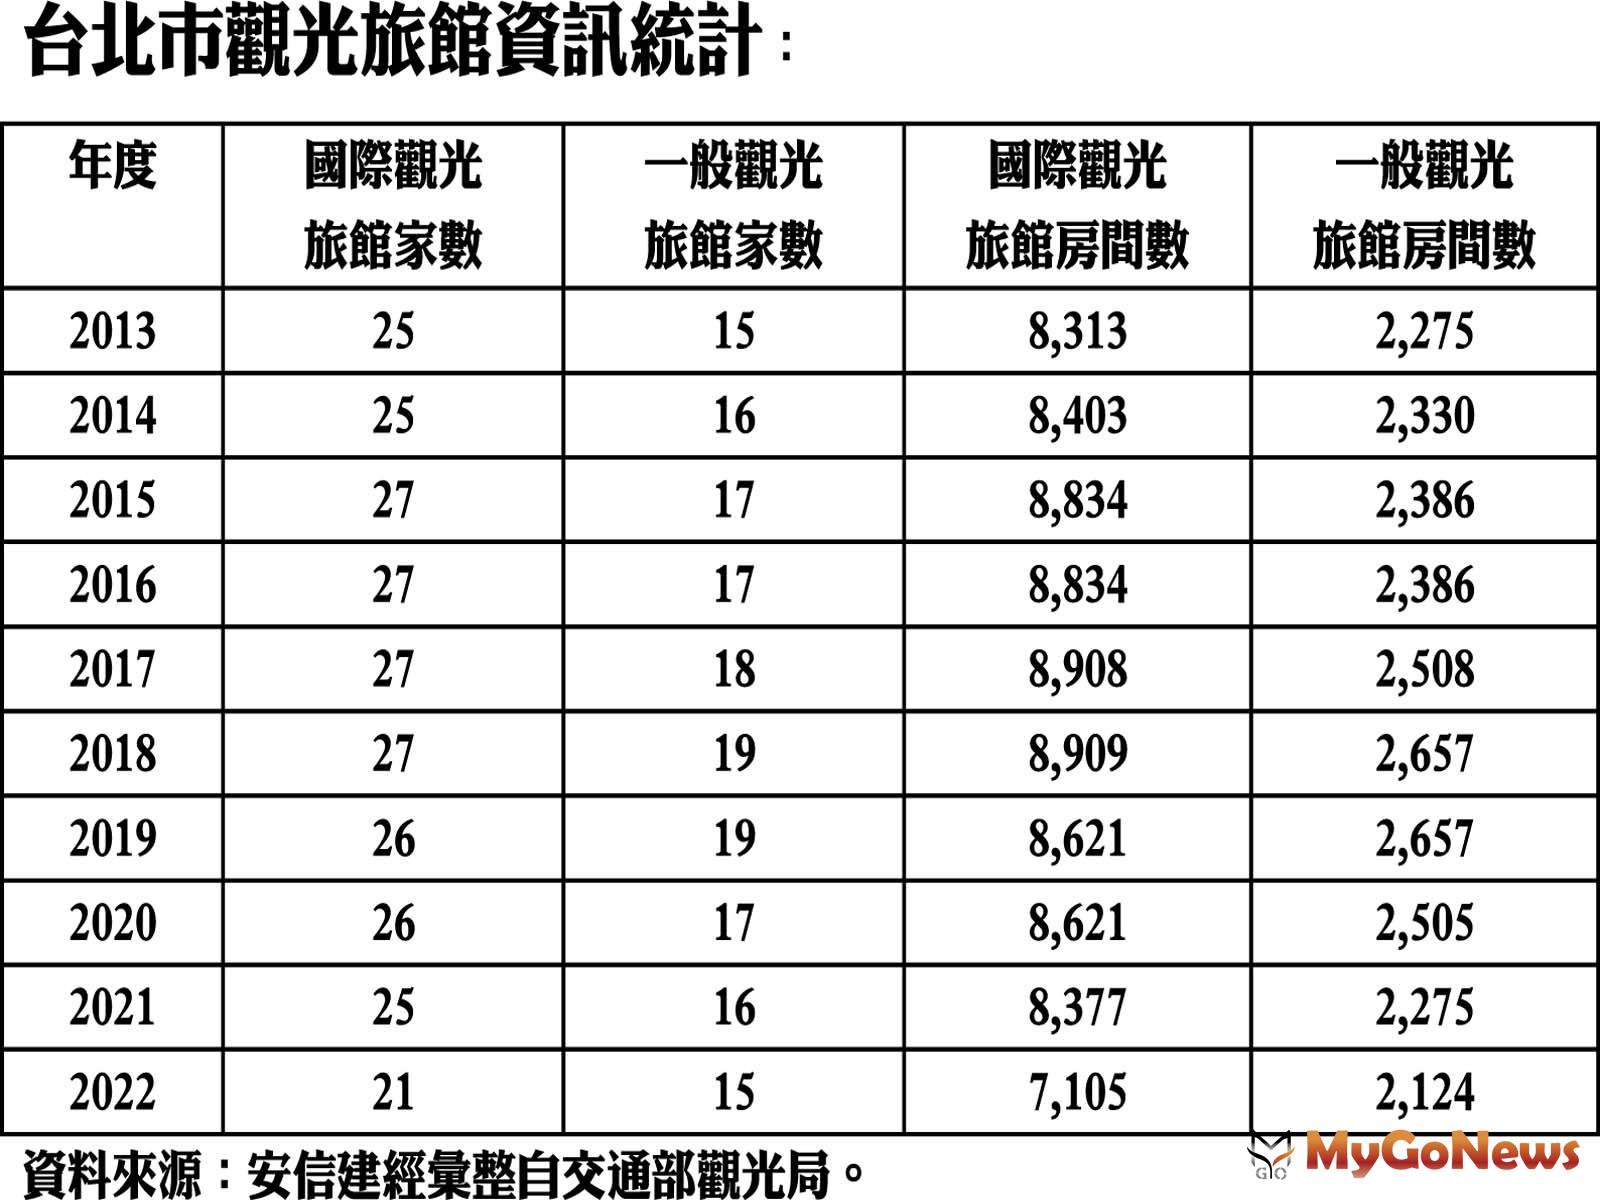 台北市觀光旅館資訊統計 MyGoNews房地產新聞 市場快訊